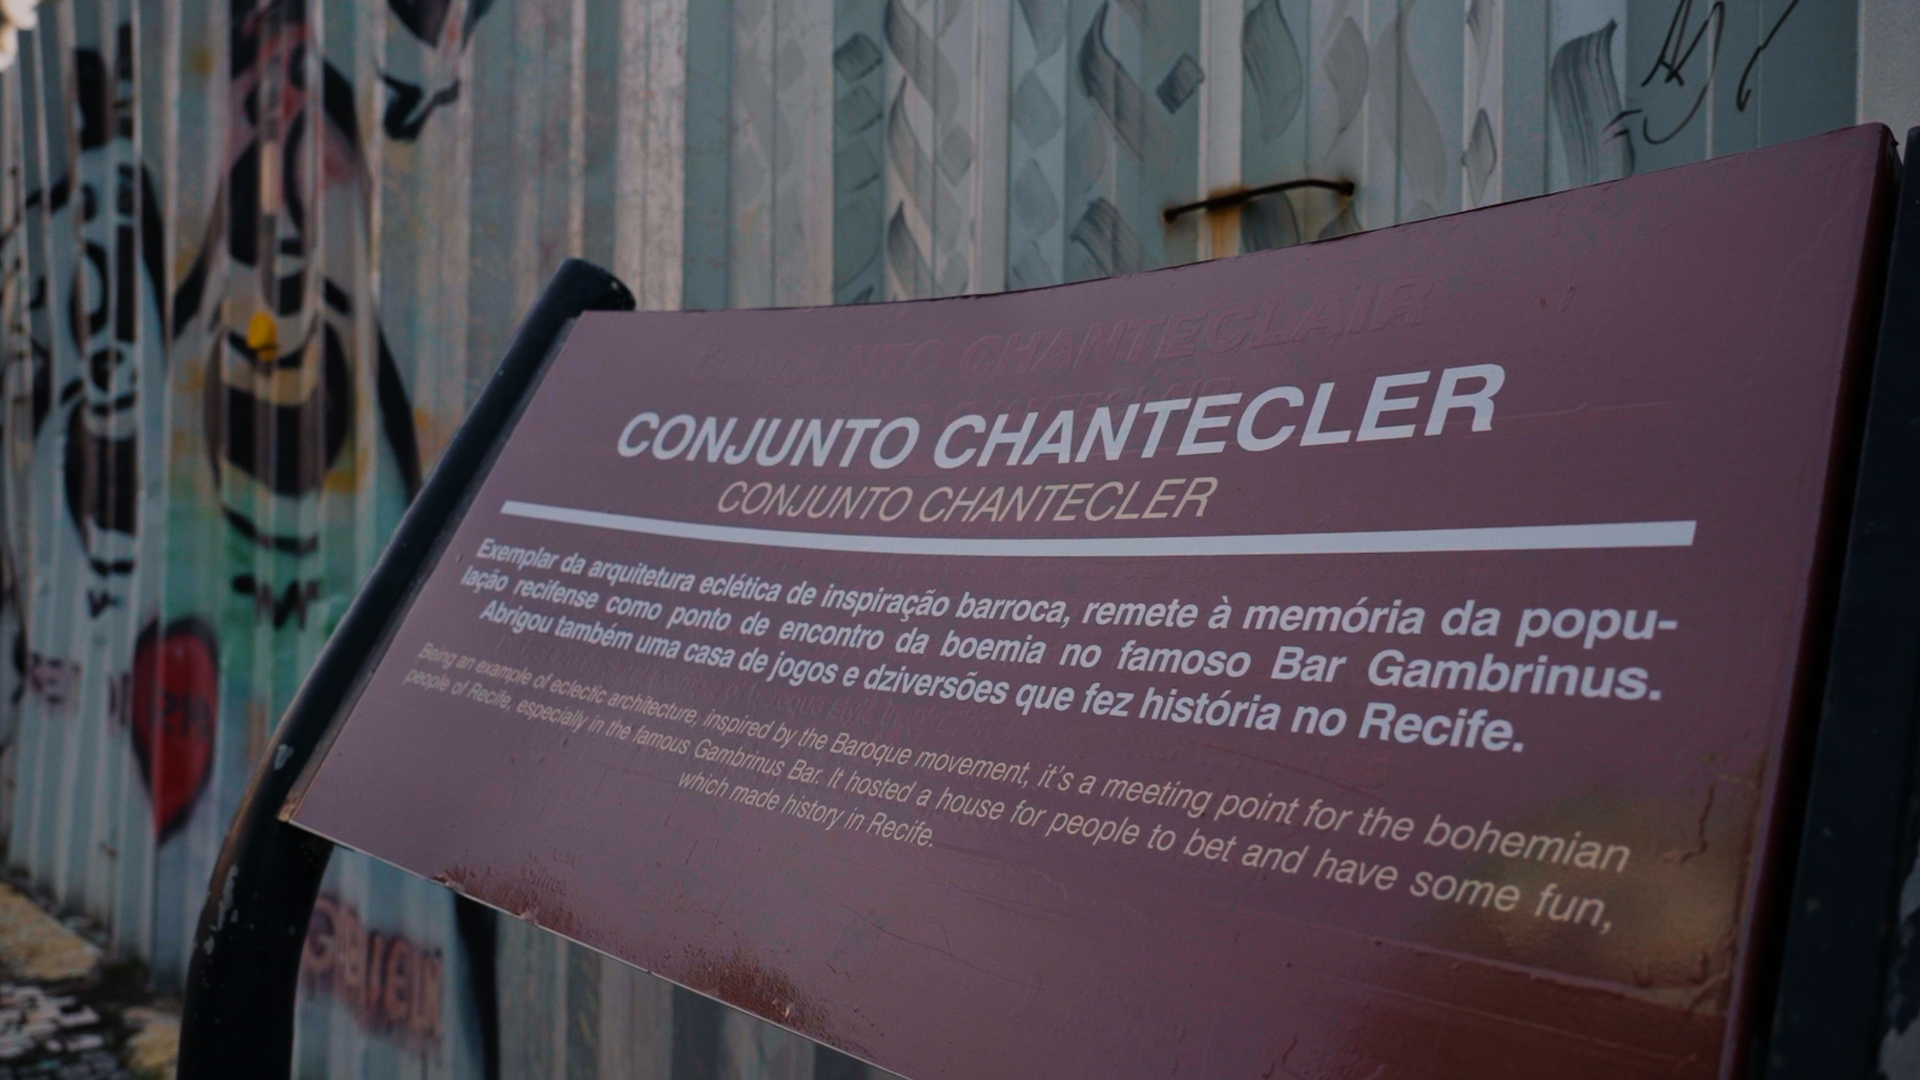 Edificio Chanteclair - CASACOR Pernambuco